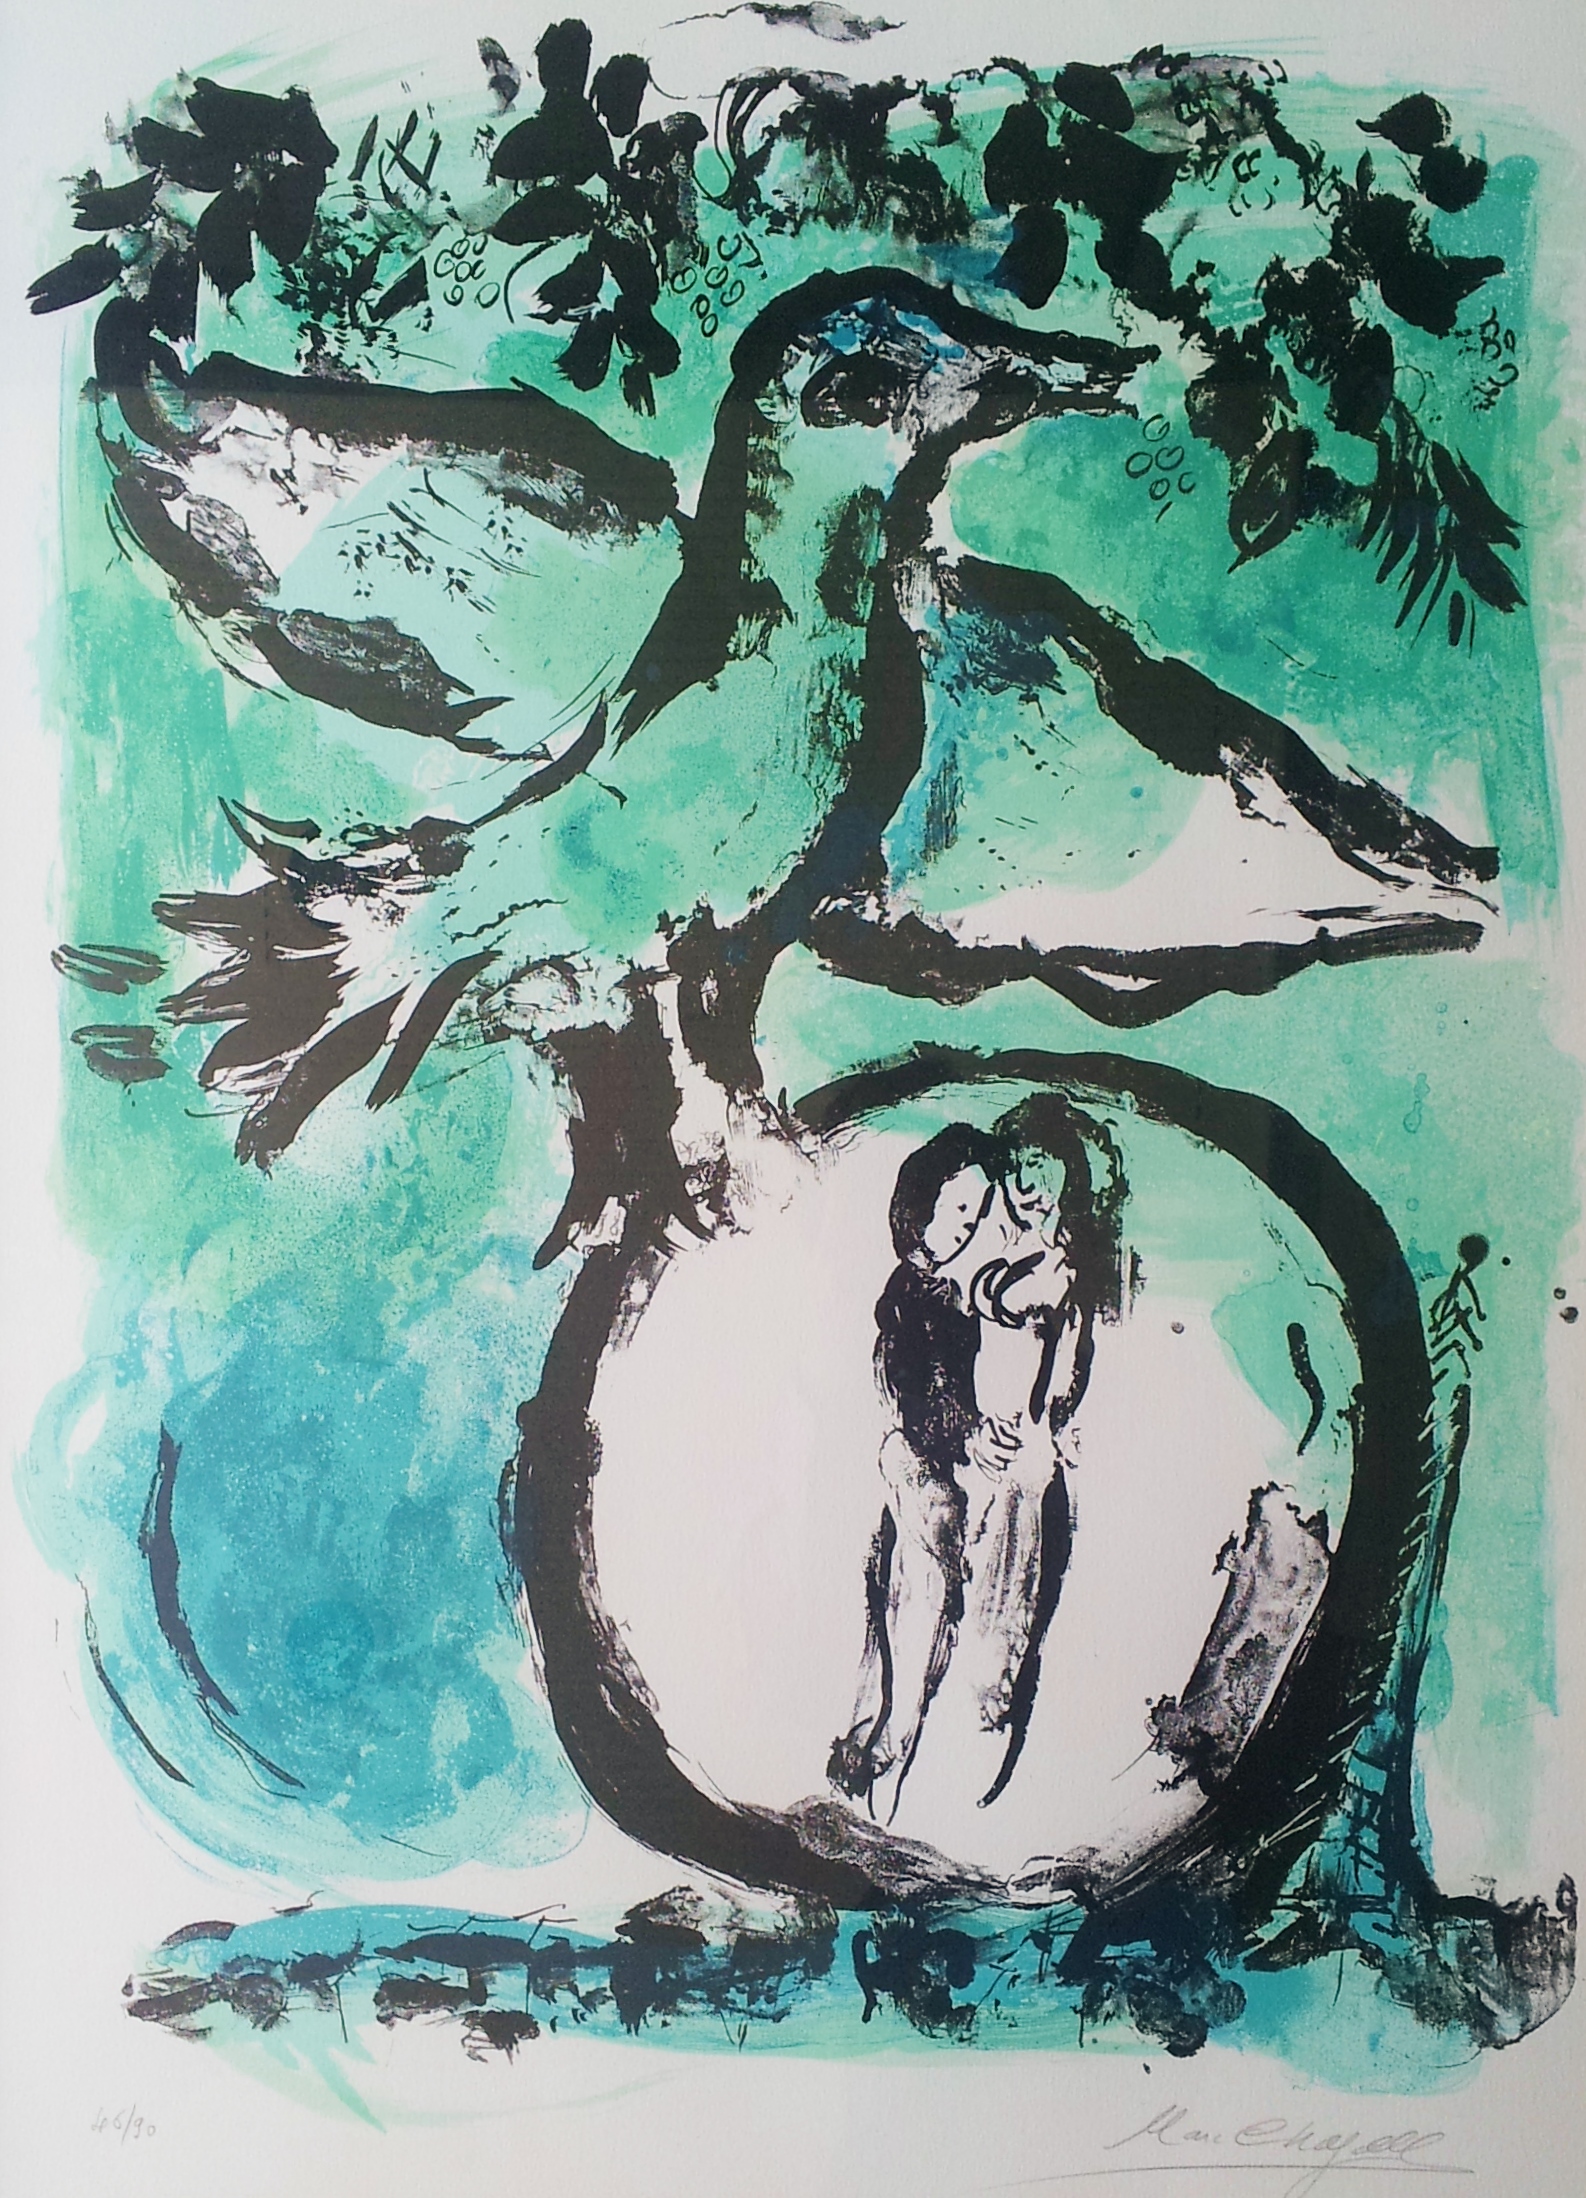 マルク シャガール 緑の鳥 リトグラフ 画廊アートエミュウ Art Emy ユトリロ ジャンセン フランス美術 プラハ美術 現代アート 絵画買取